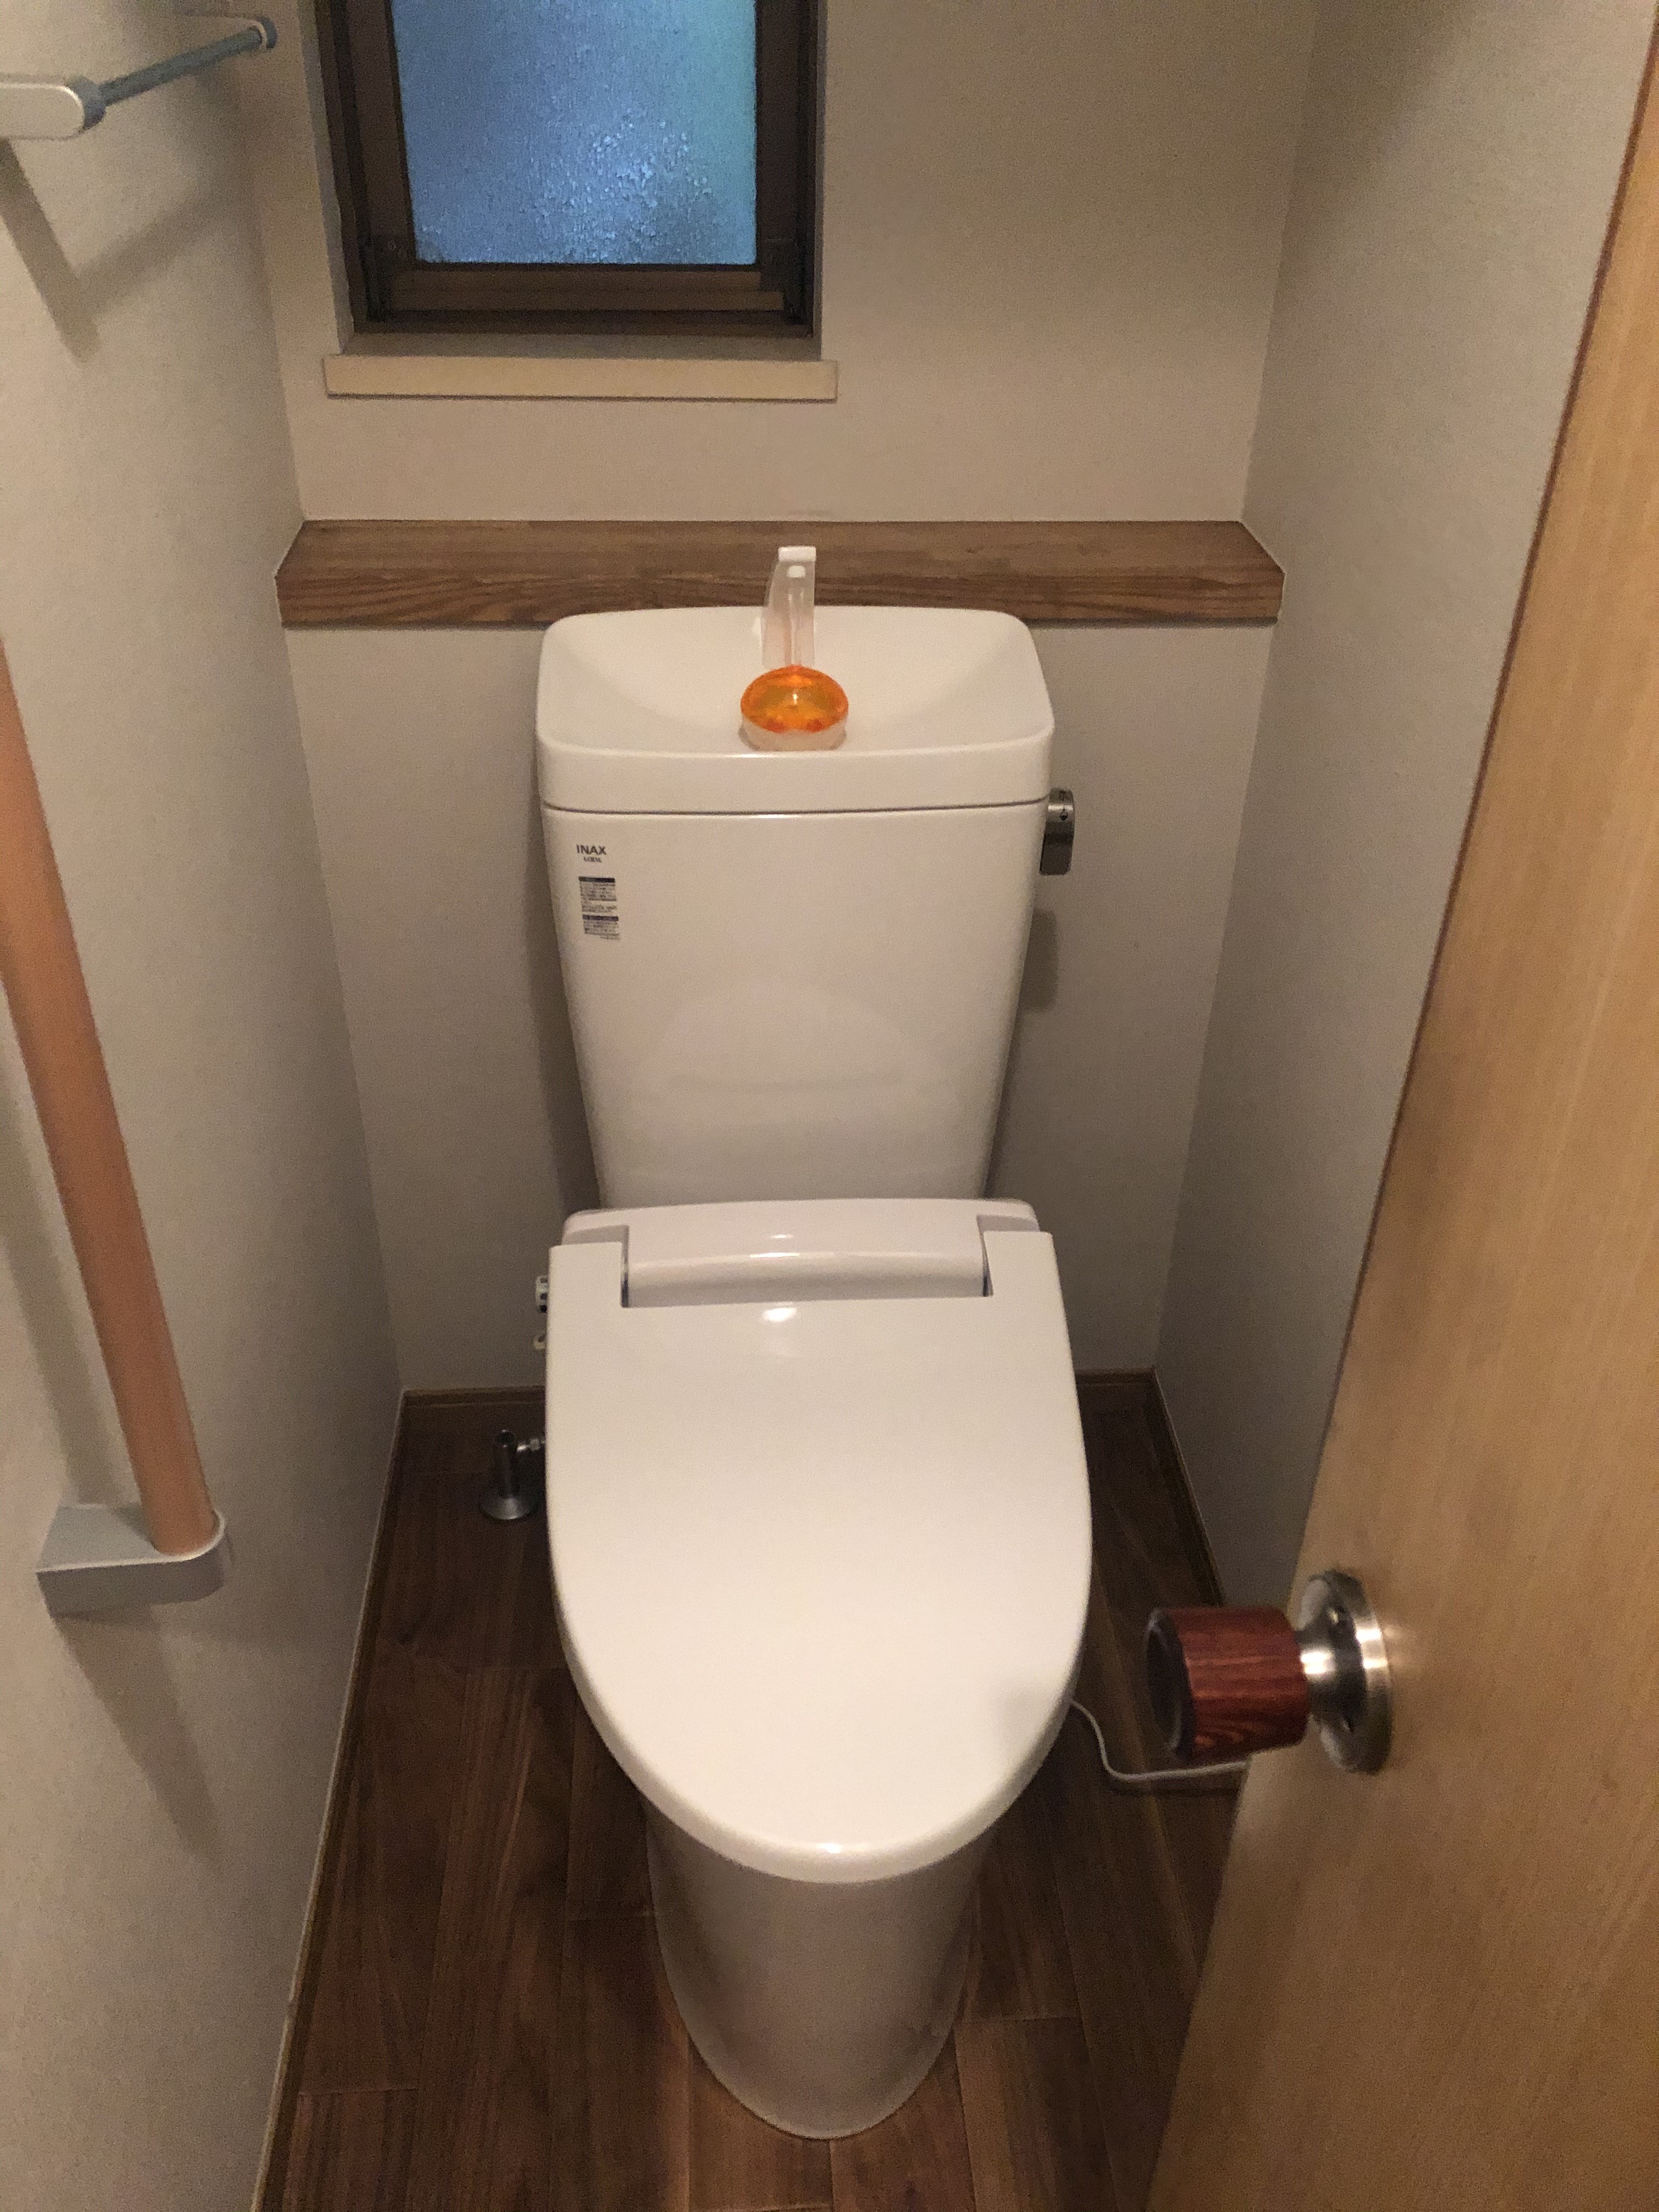 トイレ交換工事 リフォームのキューブリノベーション